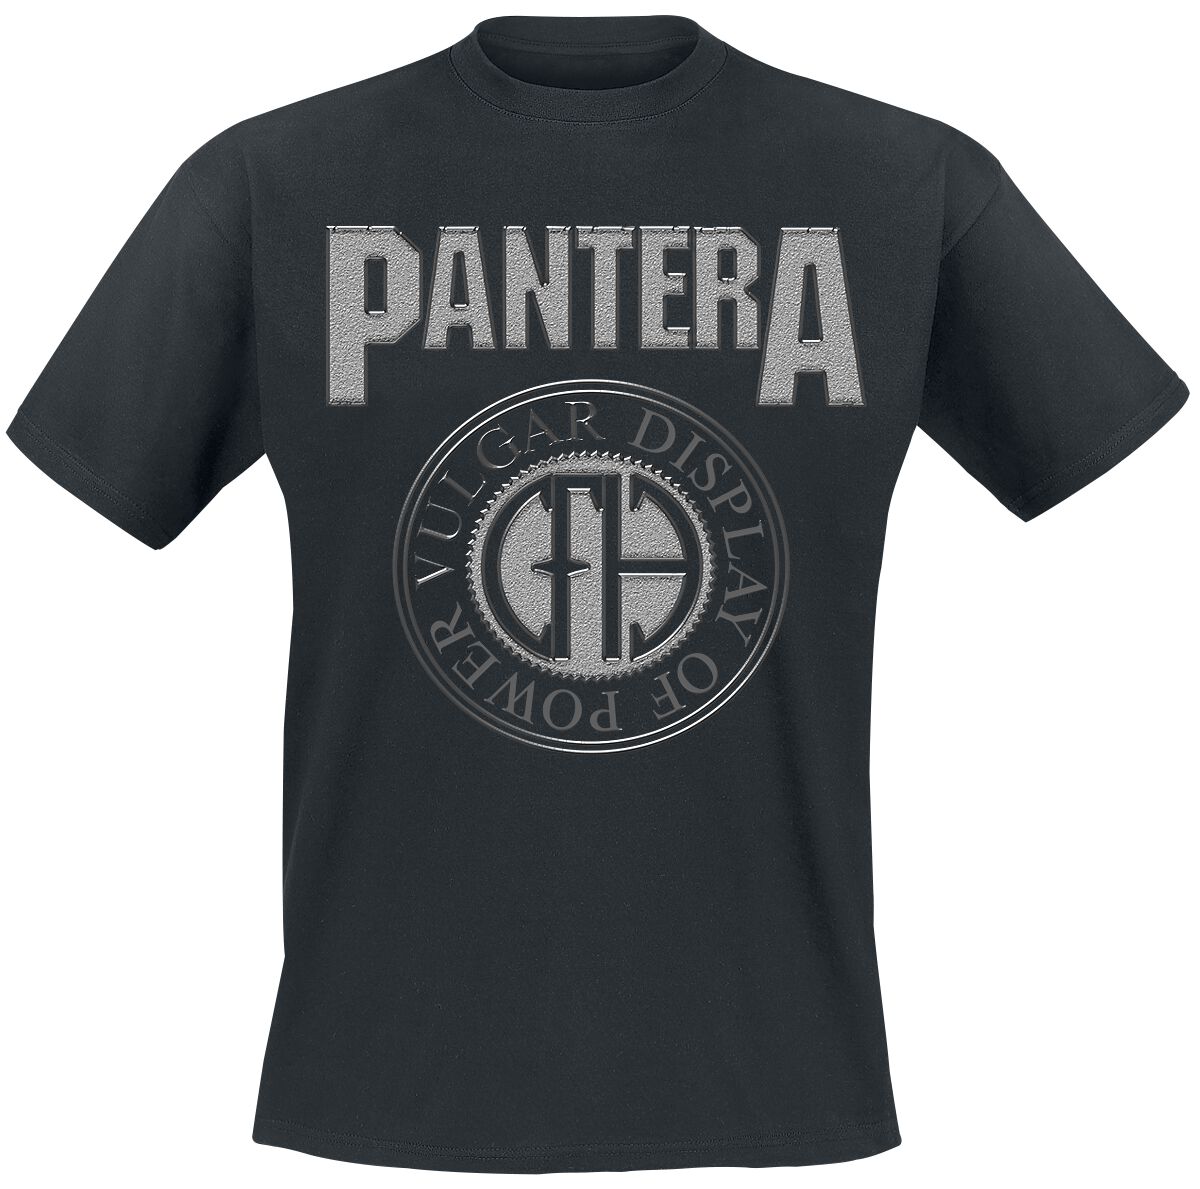 Pantera T-Shirt - S bis XL - für Männer - Größe S - schwarz  - Lizenziertes Merchandise!